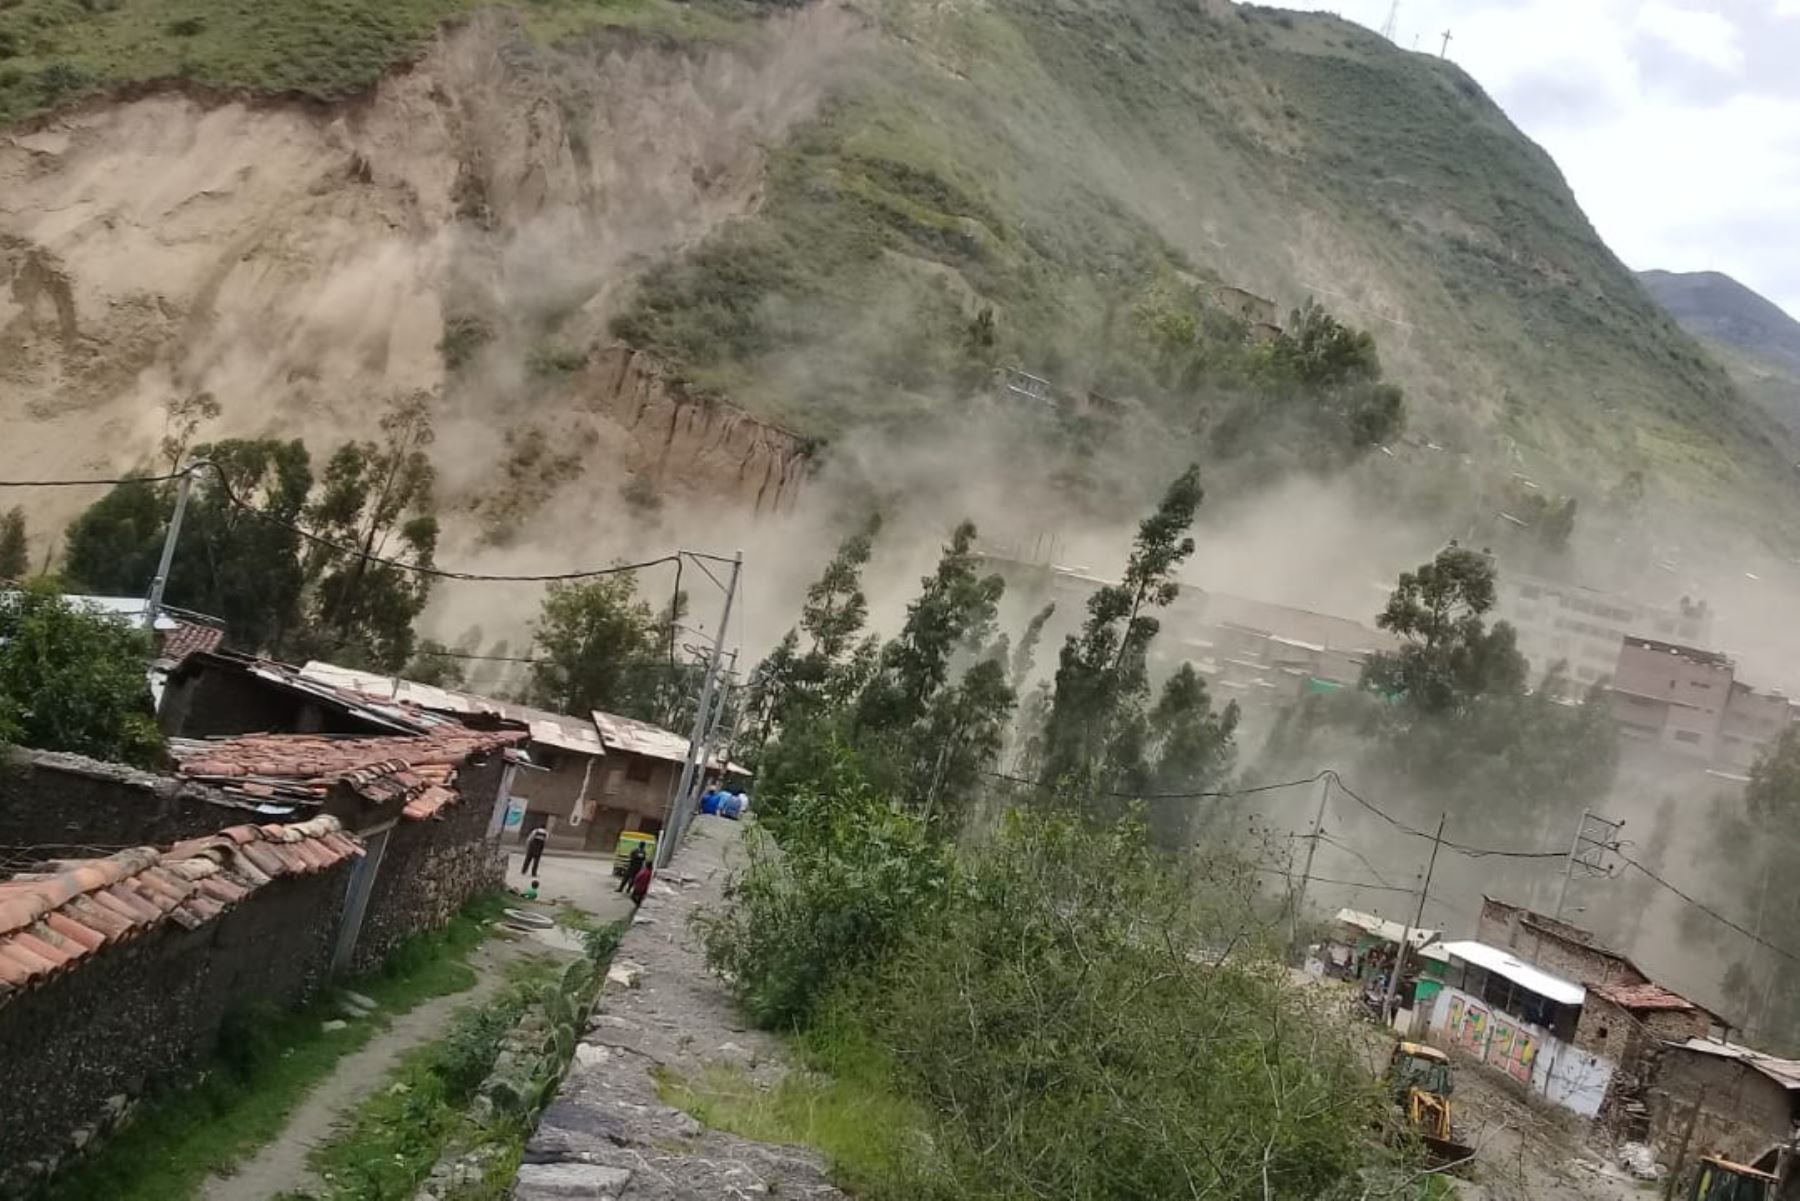 El COER de Áncash informó que el cerro Pumacoto, ubicado en la provincia de Sihuas, se desplomó hoy a causa de las lluvias intensas.